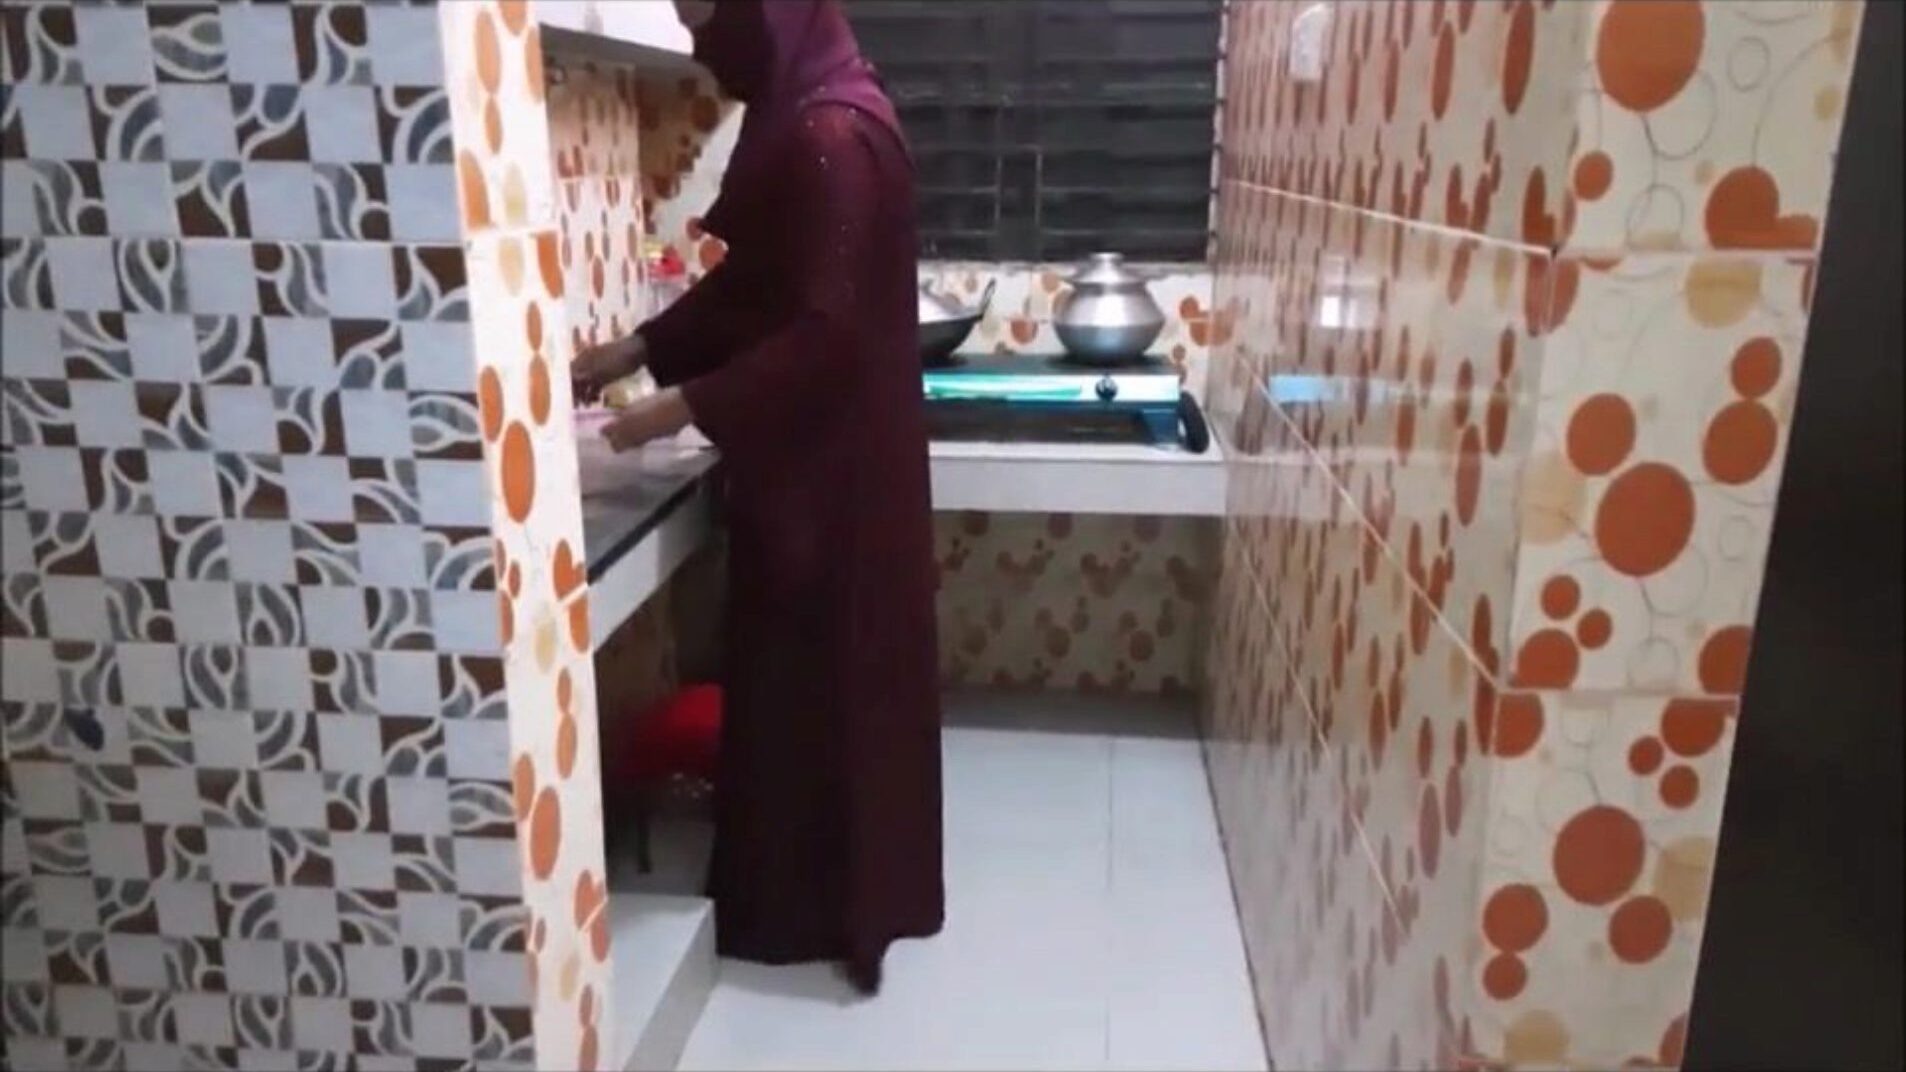 muslimi sisar laissa keittiö vittu lain kanssa katsella muslimi sisar laki keittiö vittu kanssa veli p-1 elokuva xhamster - perimmäinen valikoima ilmaisia ​​arabi intialaisia ​​hd pornografia putki elokuvia